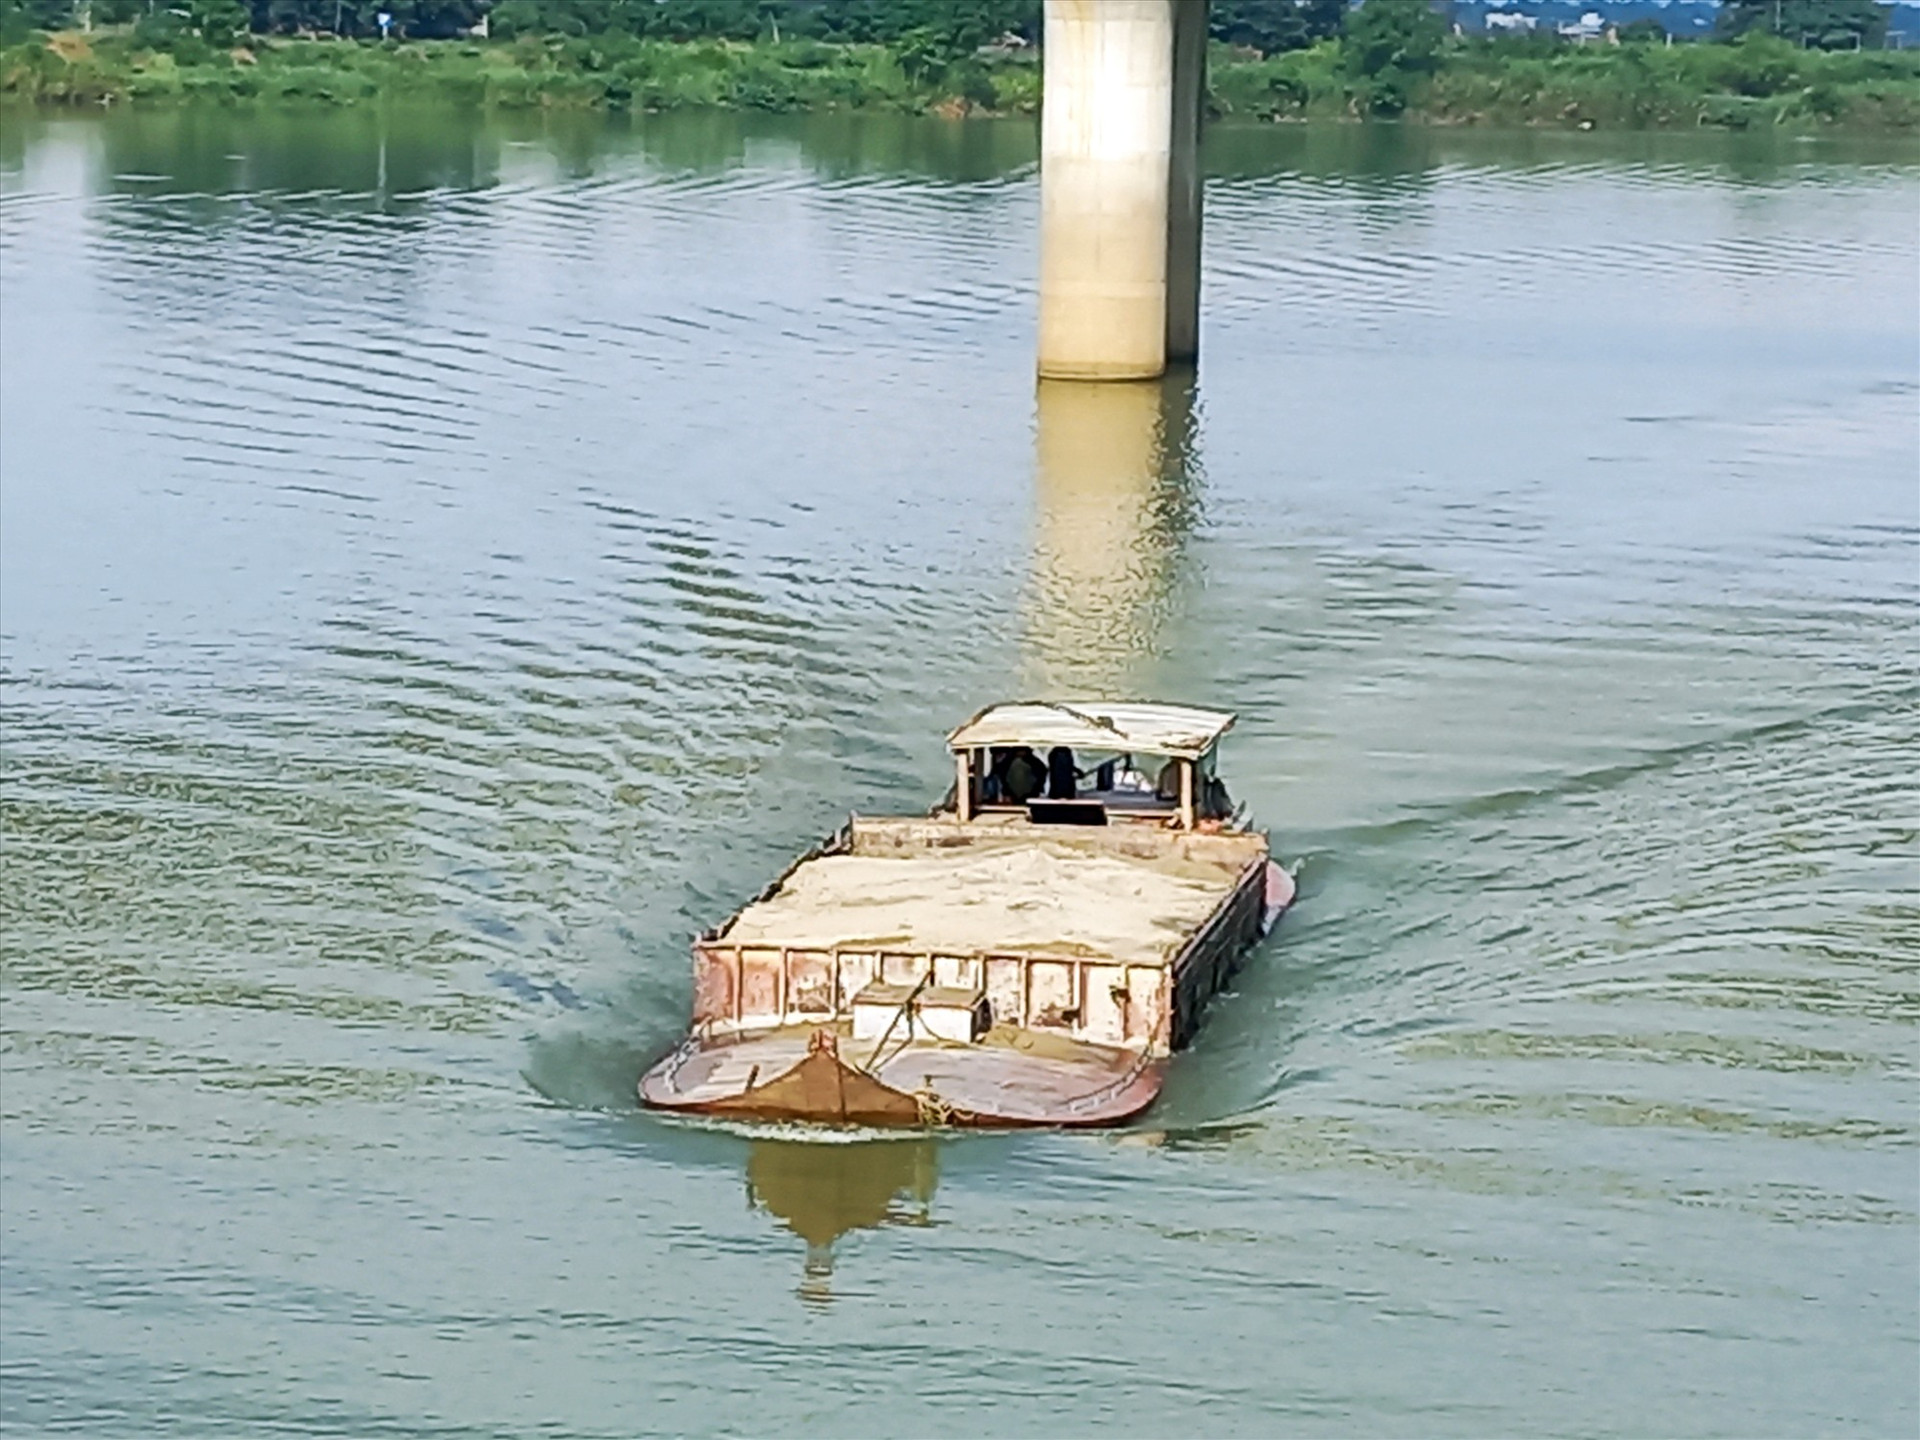 Ghe chở cát quá vạch mớn nước an toàn trên sông Thu Bồn qua địa phận xã Điện Quang (Điện Bàn). Ảnh: T.C.T